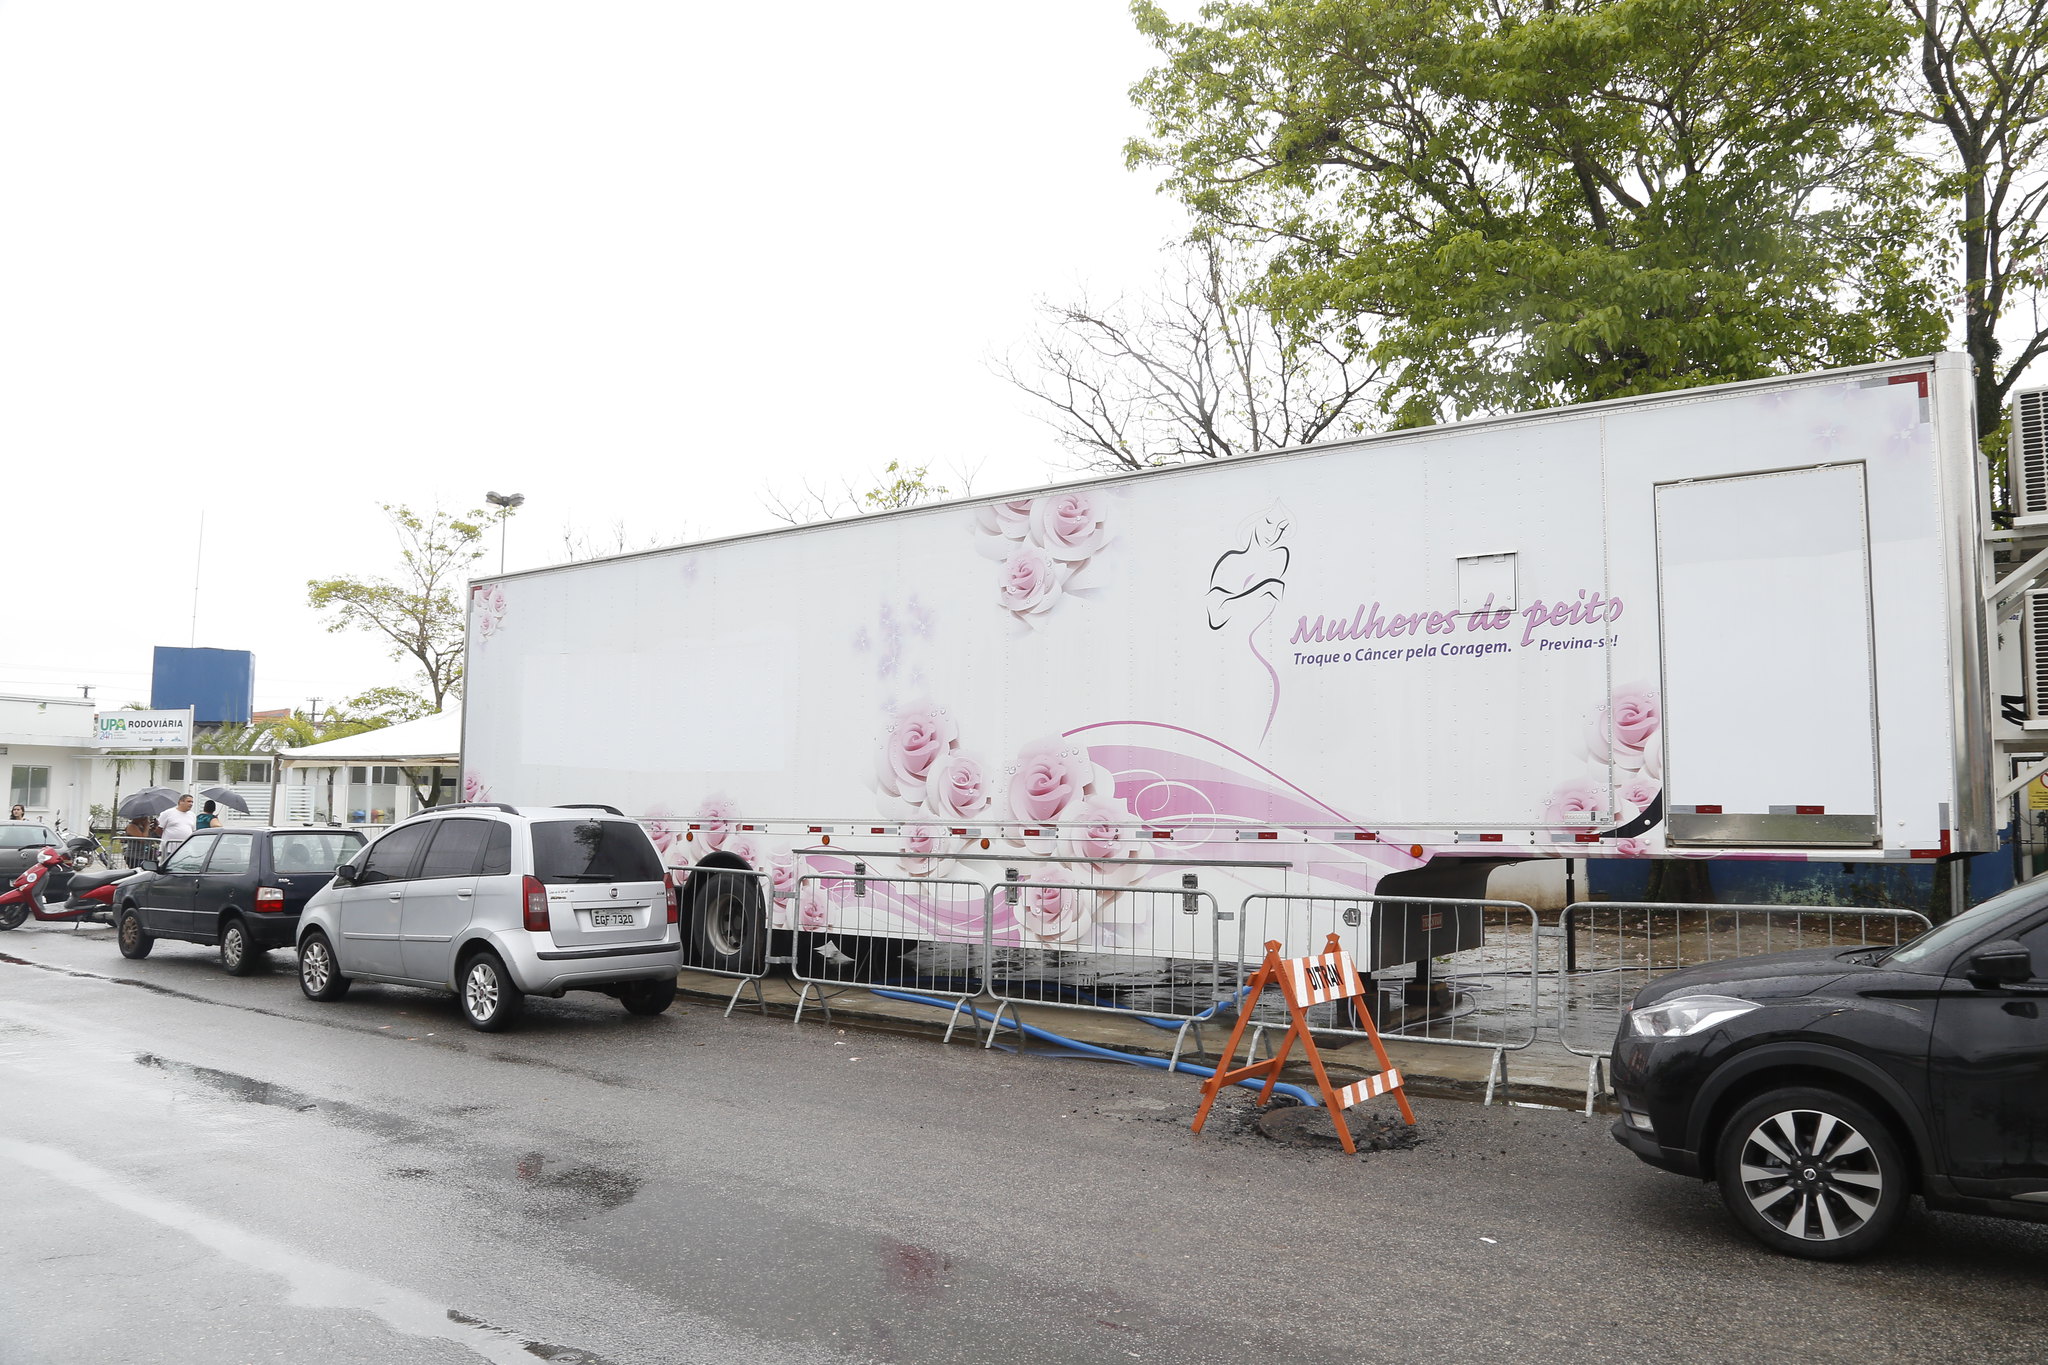 Carreta da Mamografia começa a atender em Guarujá a partir de terça-feira (7)